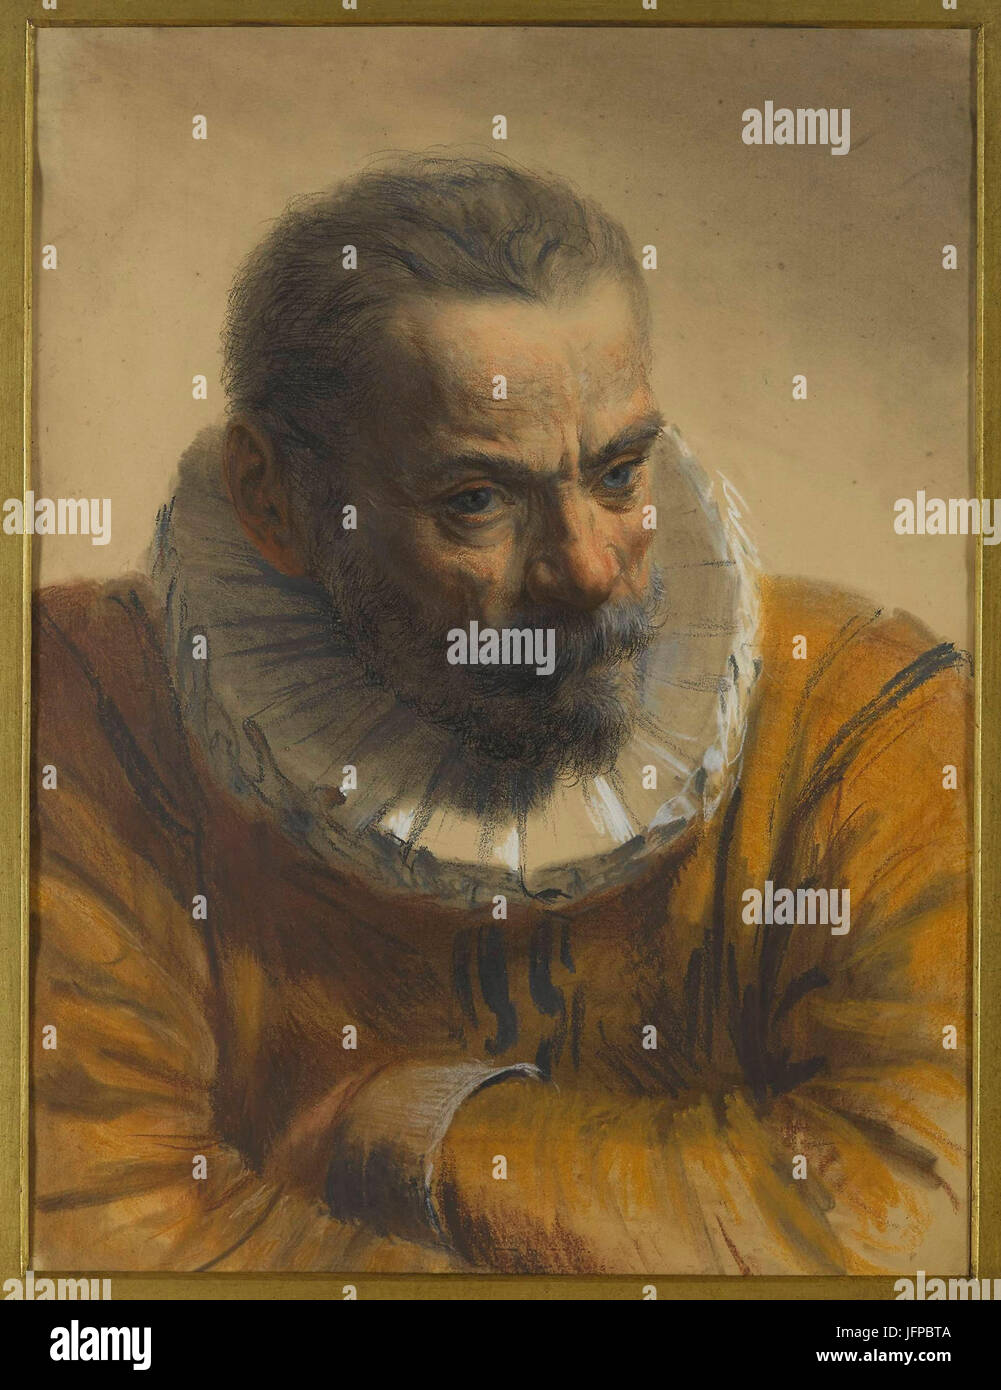 Adolph Menzel - Mężczyzna w renesansowym stroju Stock Photo